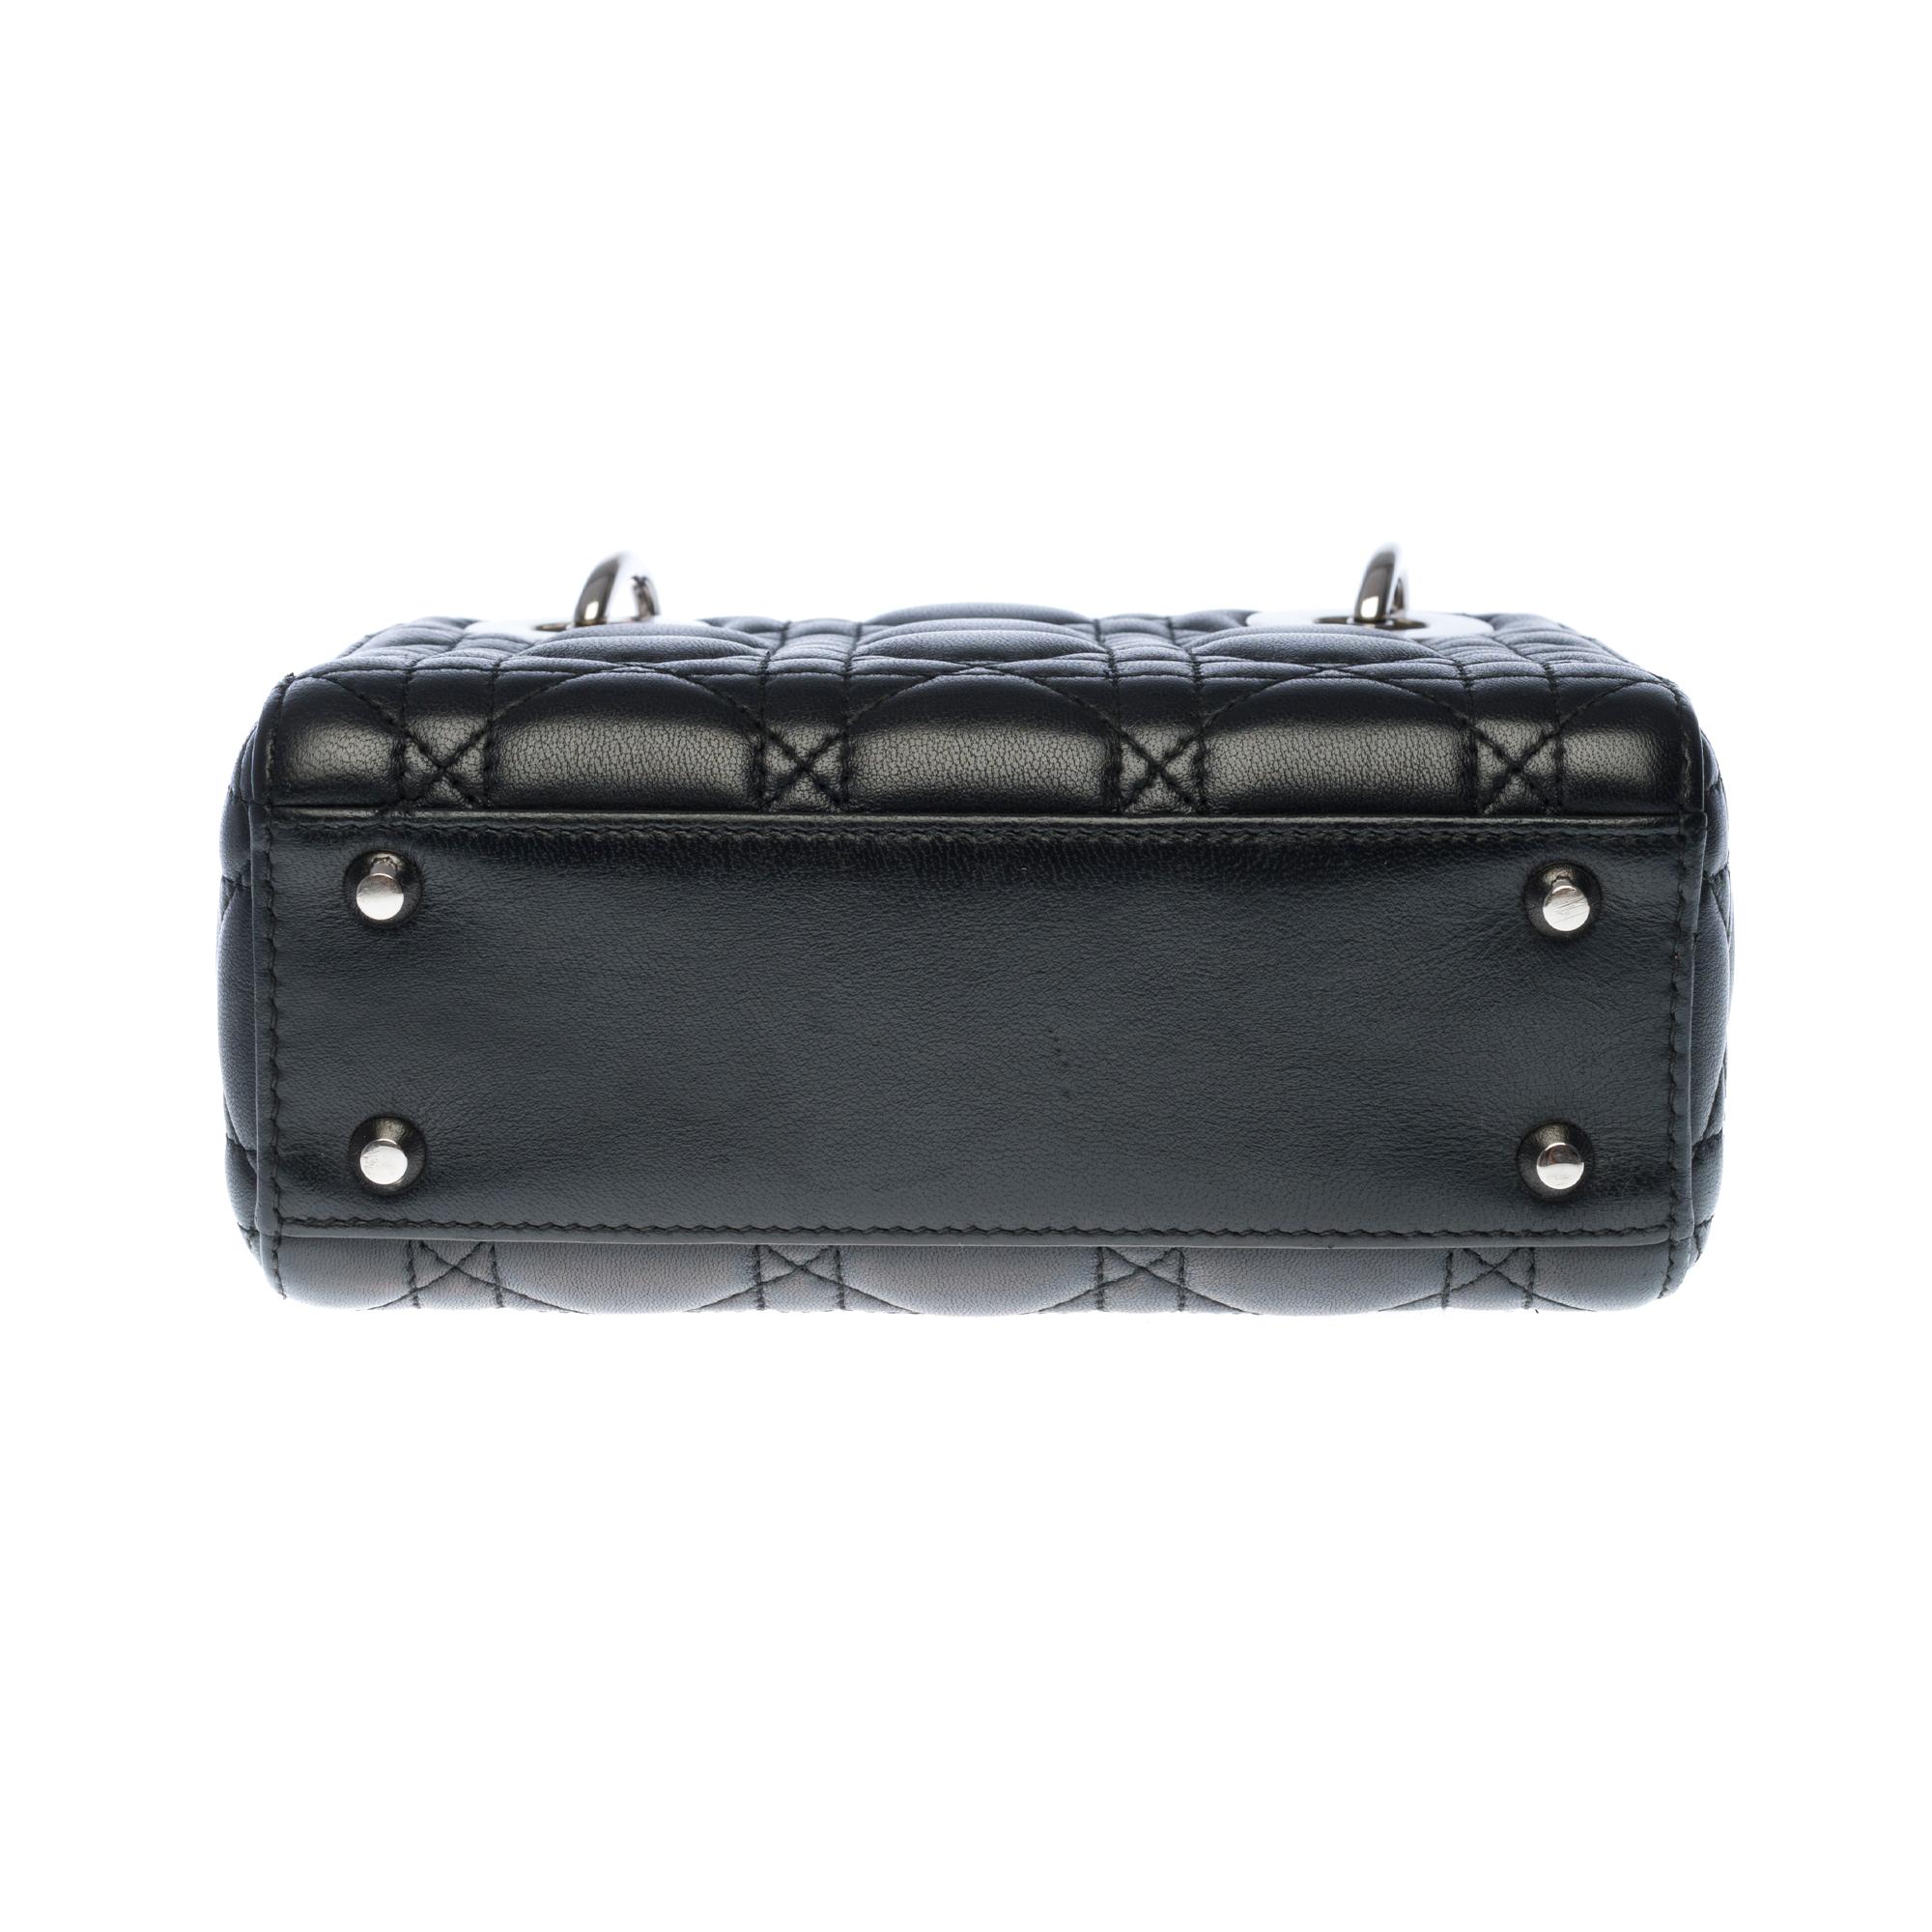  Christian Dior Lady Dior Mini handbag strap in black cannage leather, SHW 1